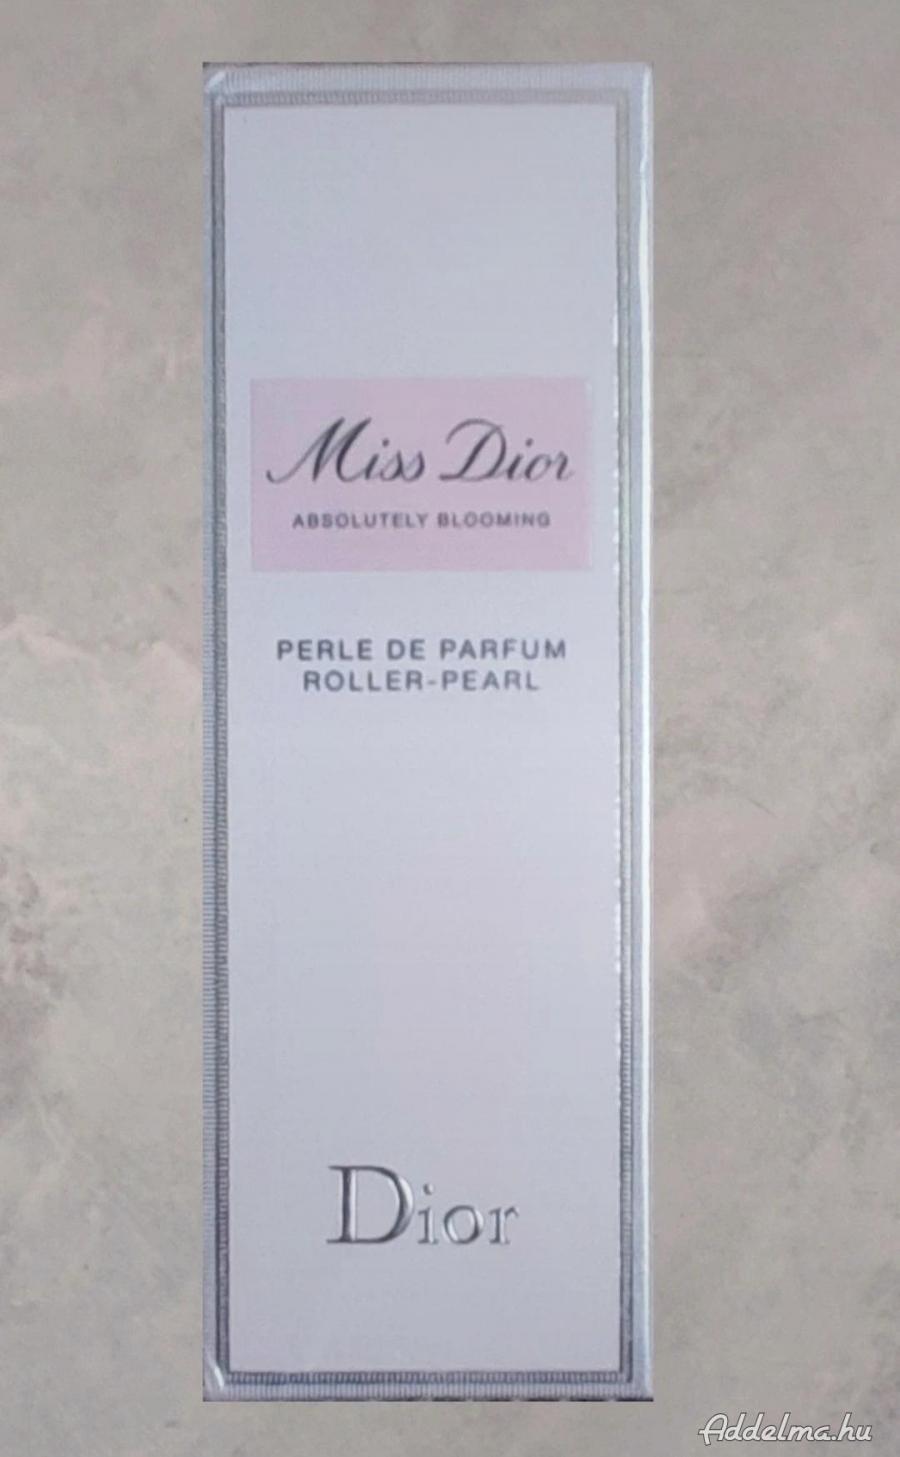 20 ml Eredeti bontatlan csomagolásban Dior parfüm 